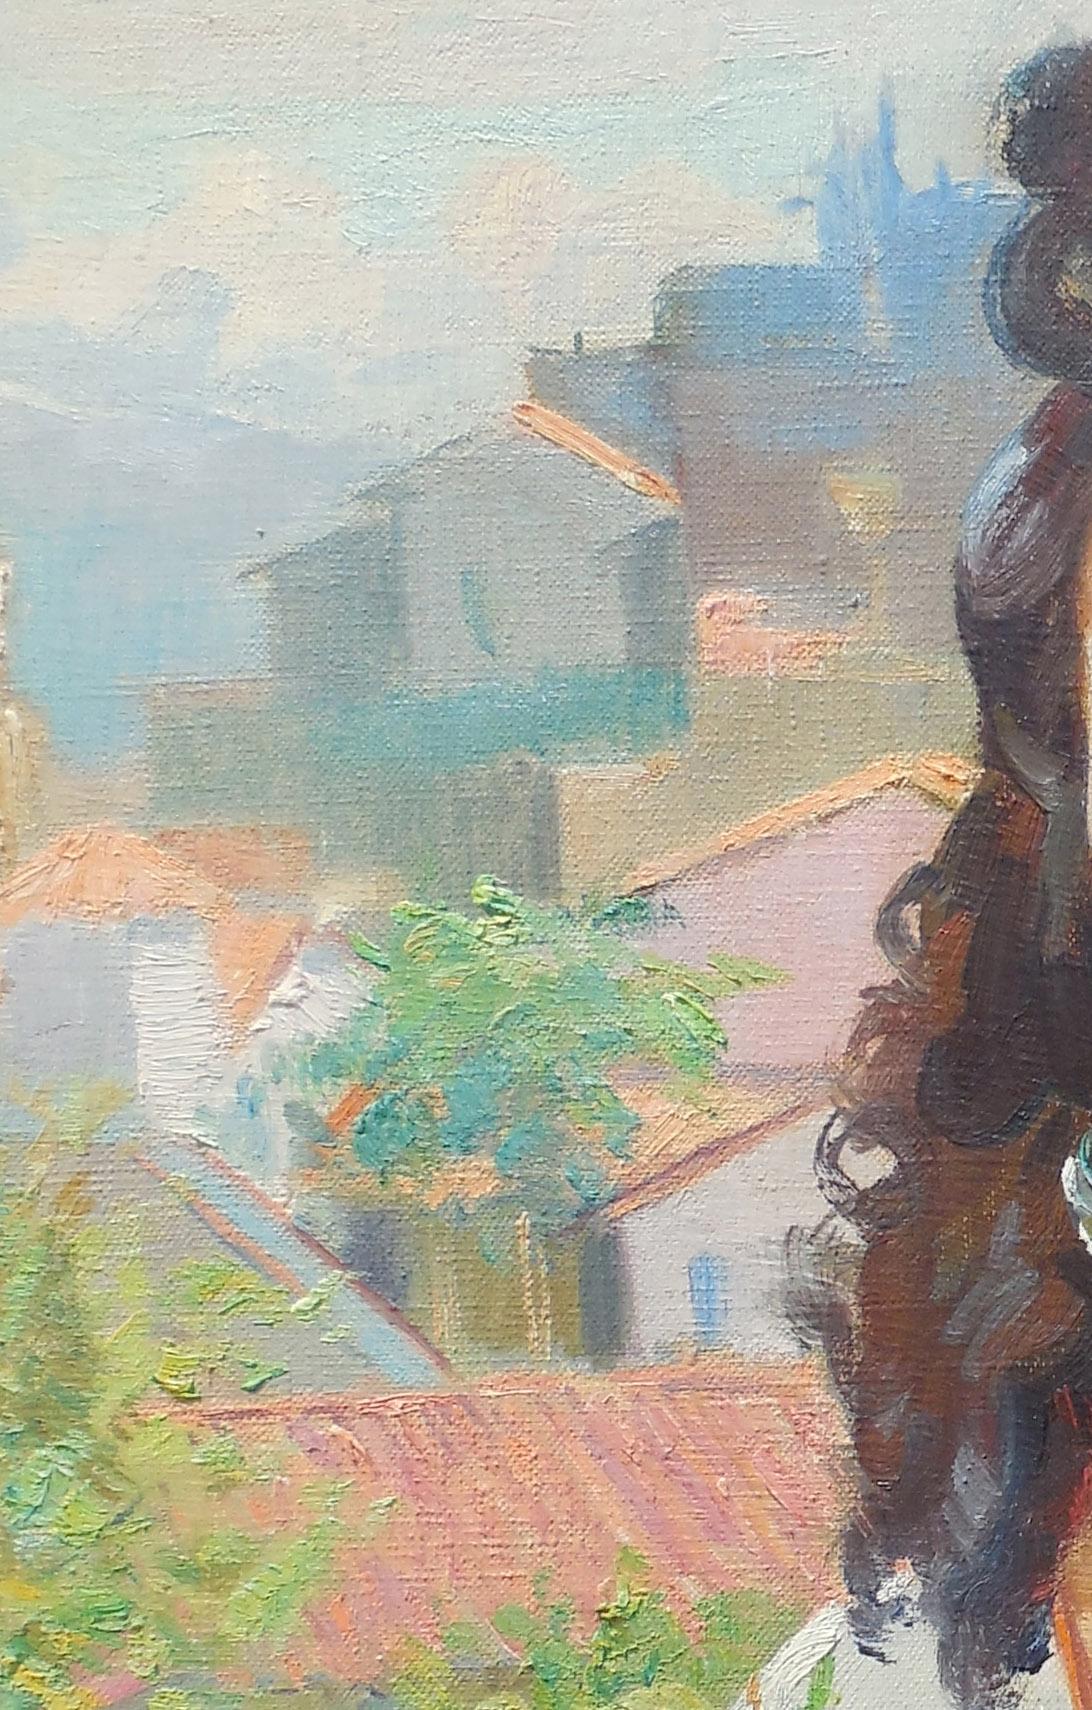 Spanische Schönheit (Porträt der Ehefrau des Künstlers)
Öl auf Leinwand, ca. 1940er Jahre
Signiert oben rechts 